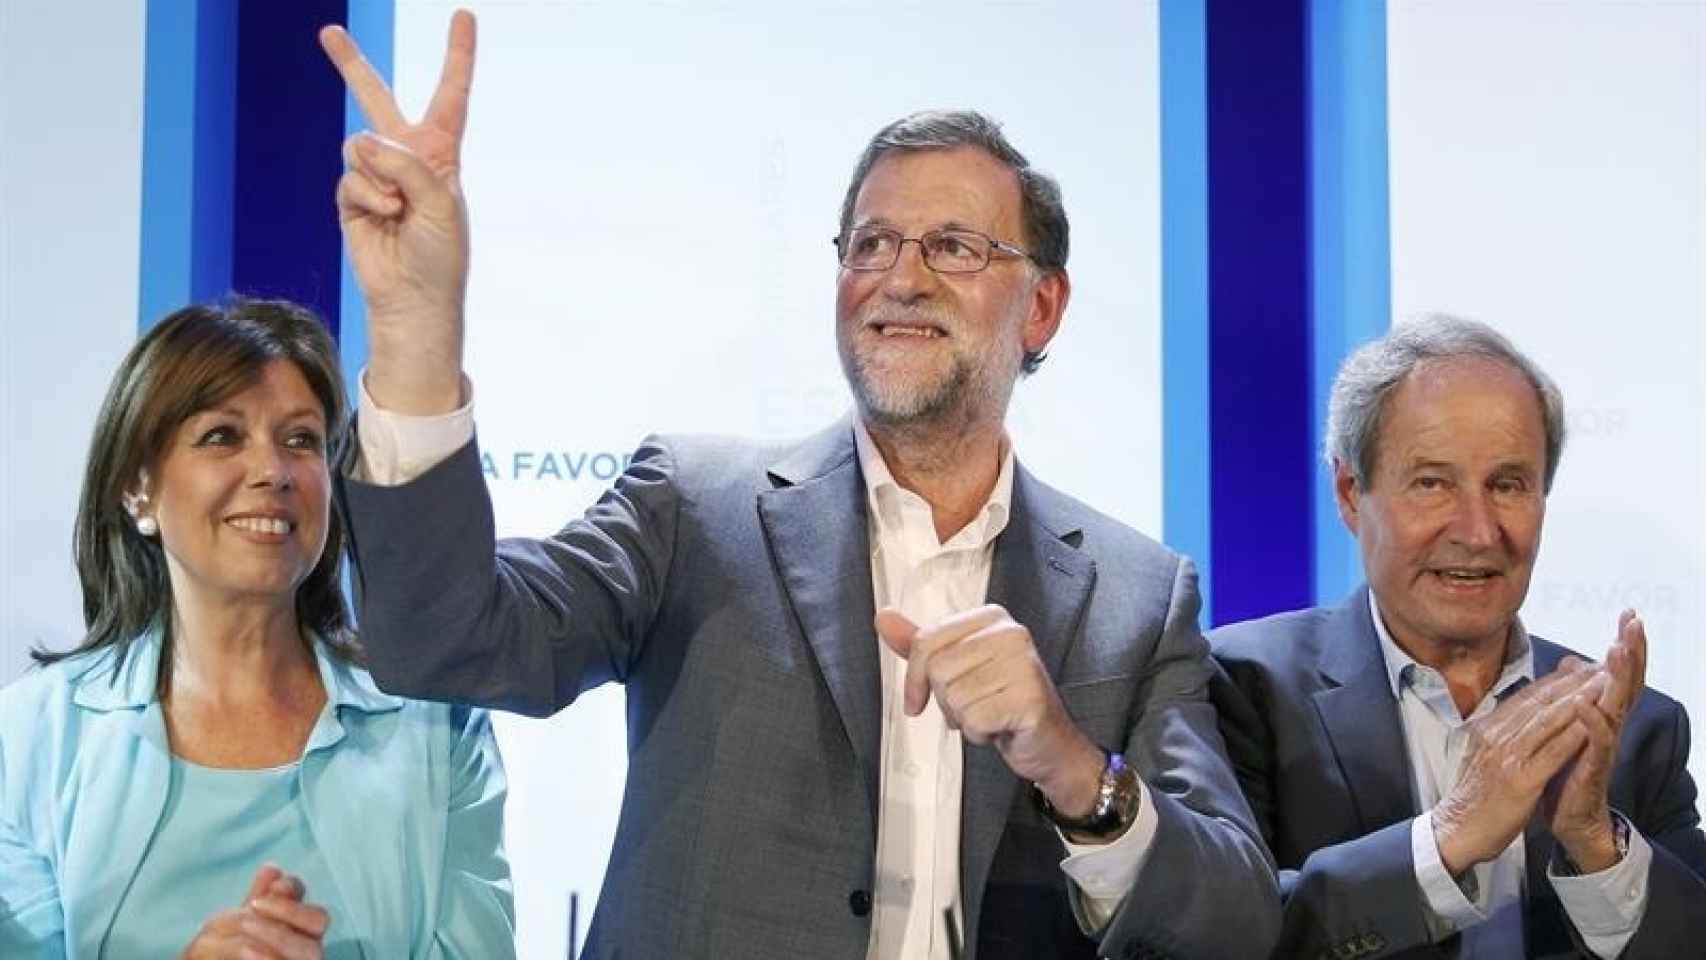 El presidente del Gobierno en funciones, Mariano Rajoy/Andreu Dalmau/EFE